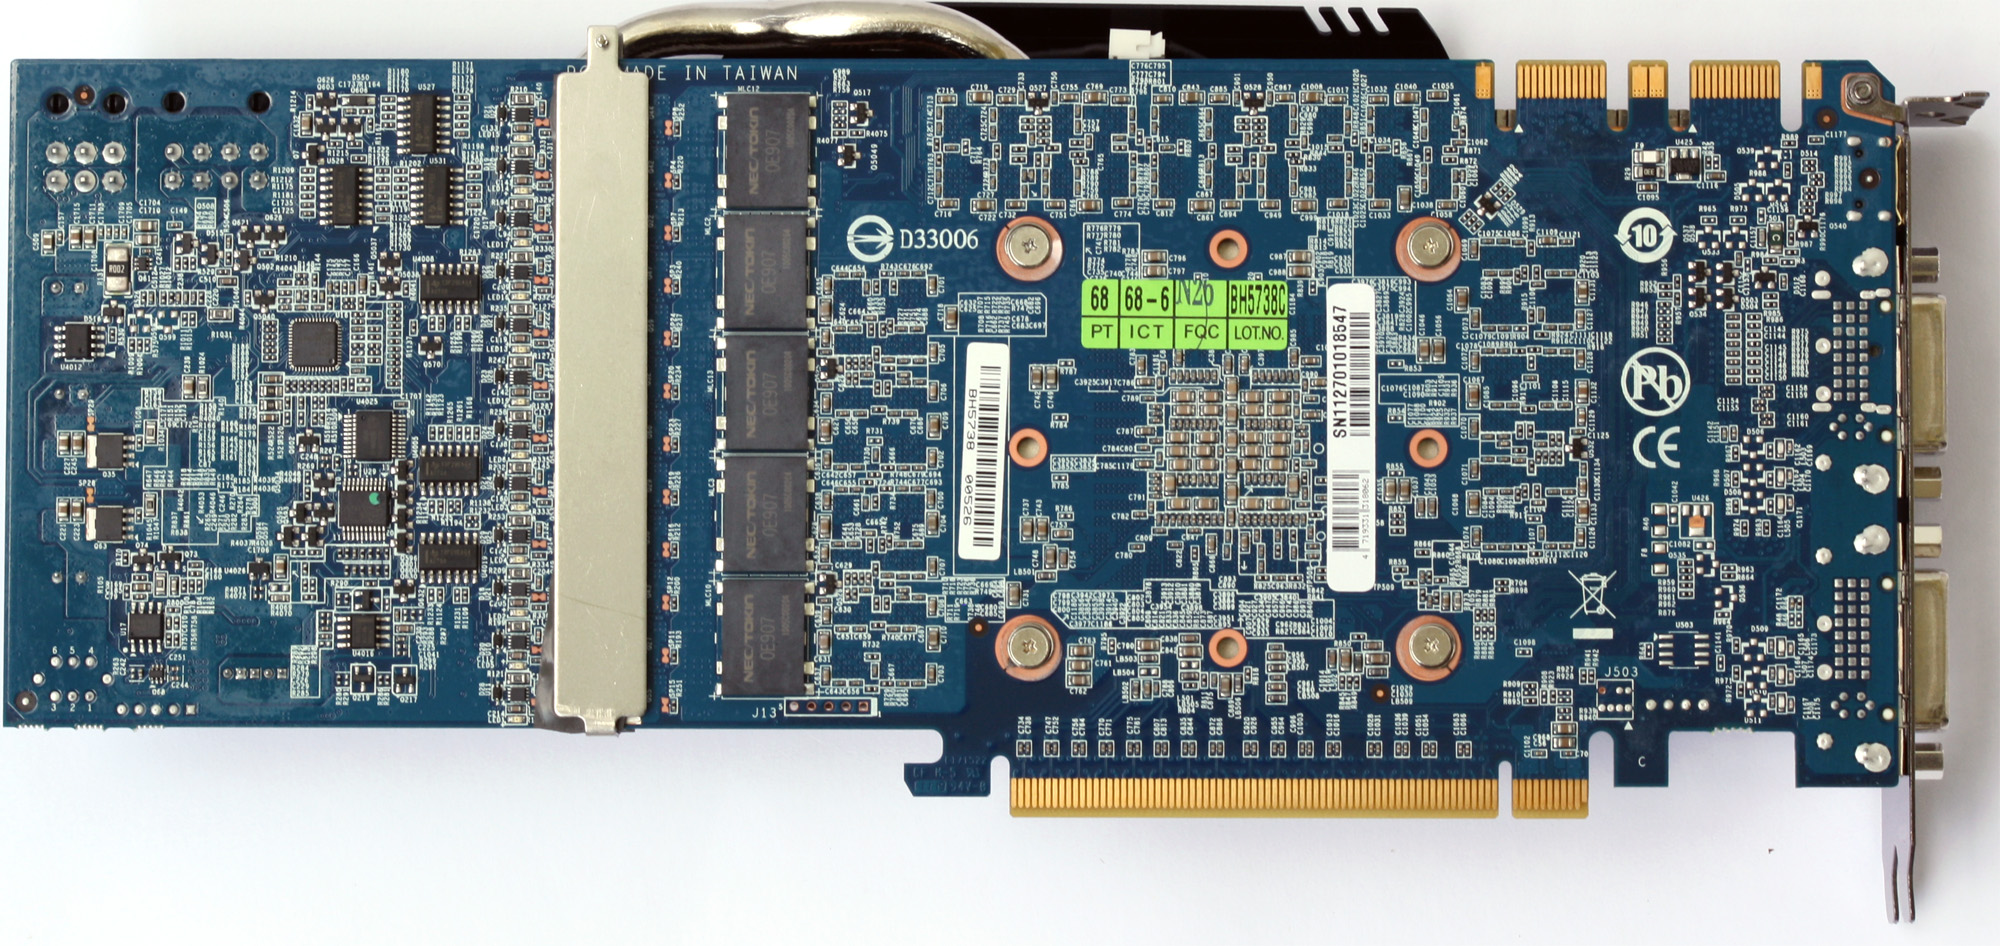 Recenze dvou vyladěných GeForce GTX 570